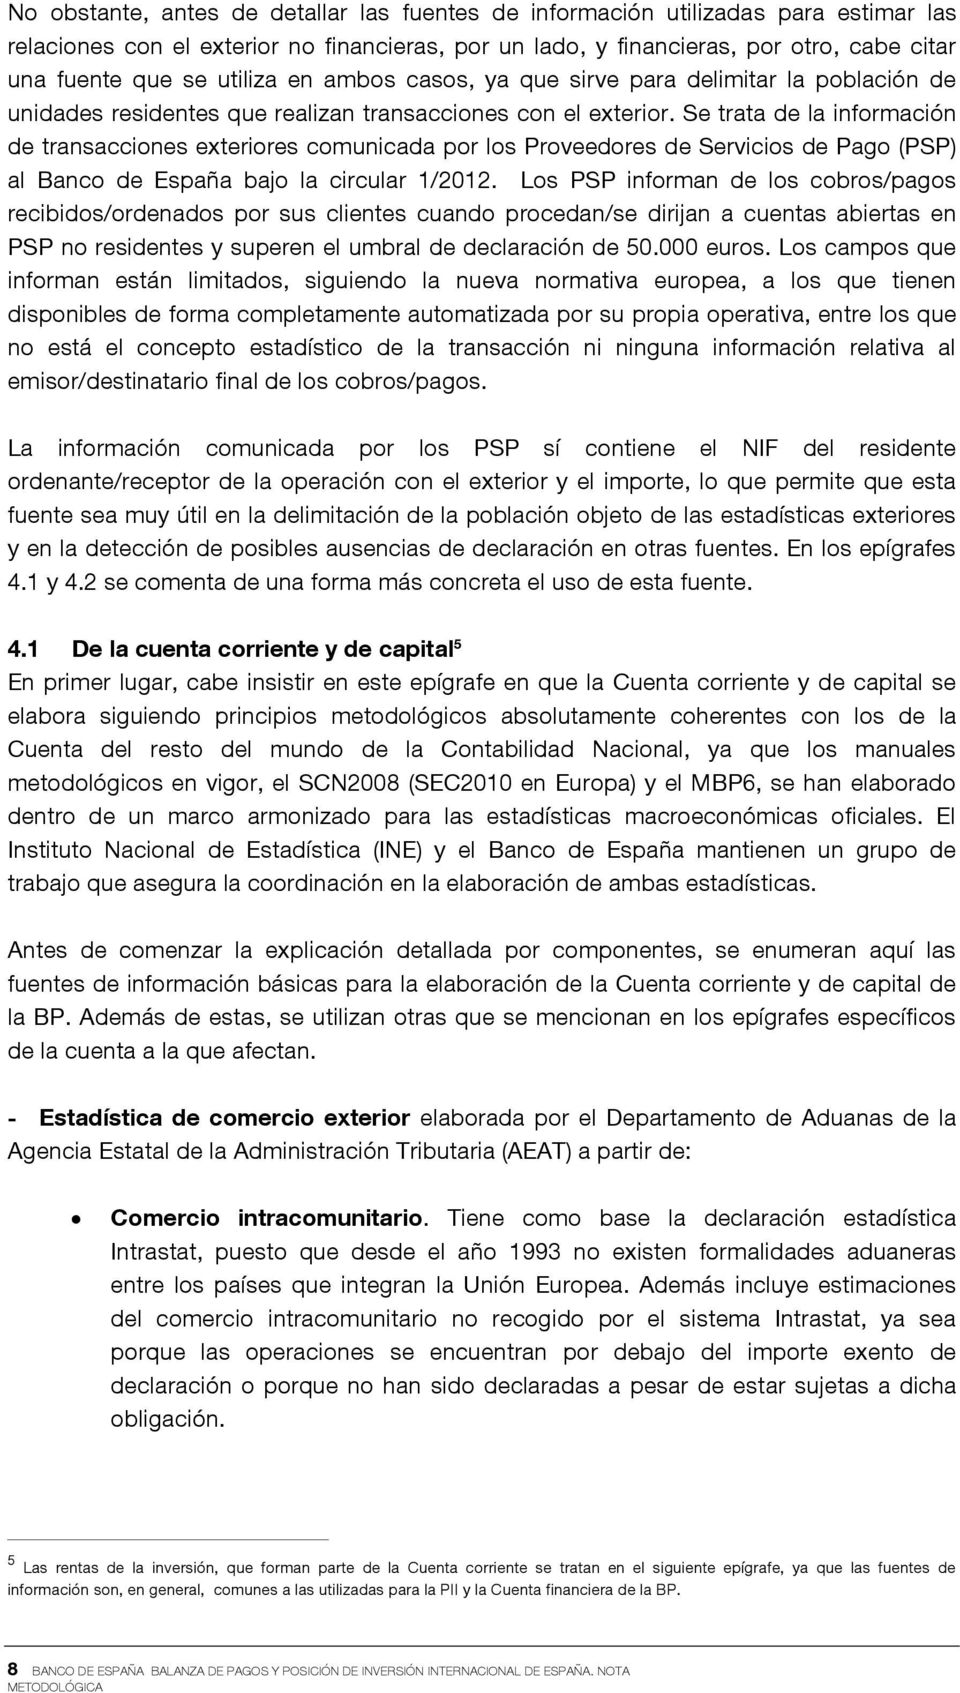 Se trata de la información de transacciones exteriores comunicada por los Proveedores de Servicios de Pago (PSP) al Banco de España bajo la circular 1/2012.